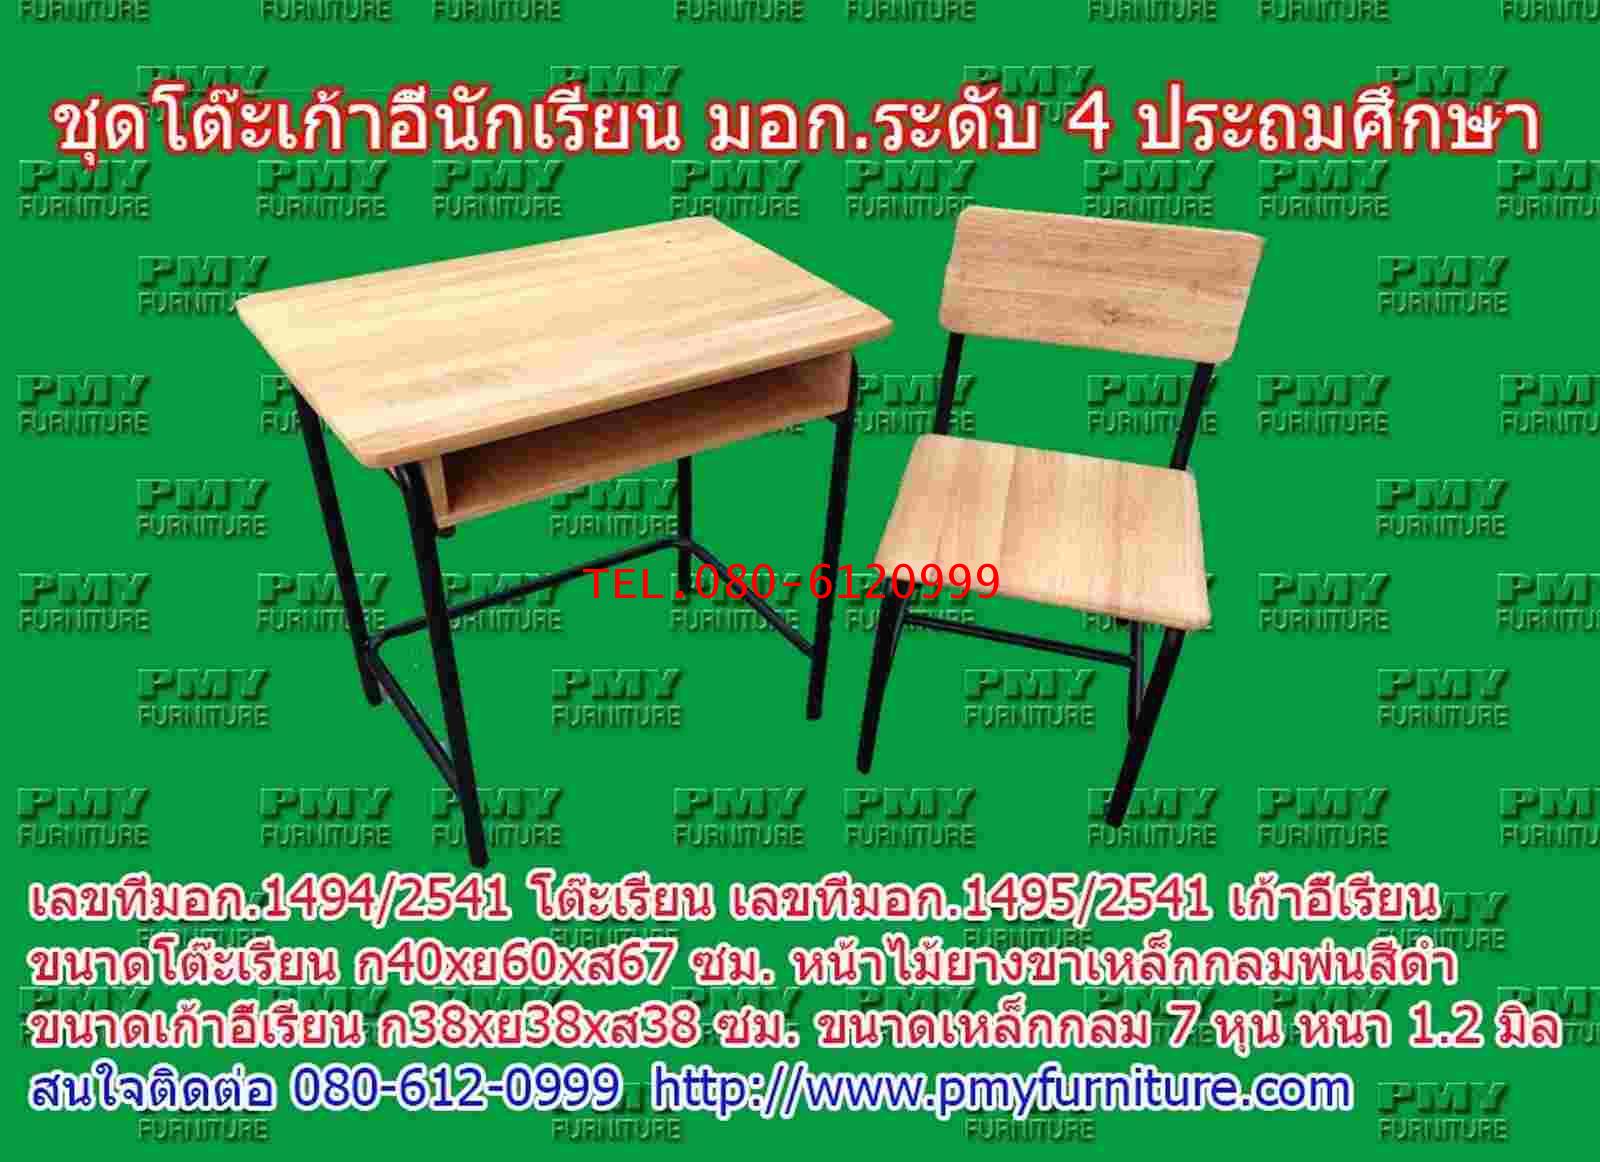 pmy1-5 โต๊ะ-เก้าอี้นักเรียน มอก.ระดับ4(ประถมศึกษา) แบบขาสีดำ